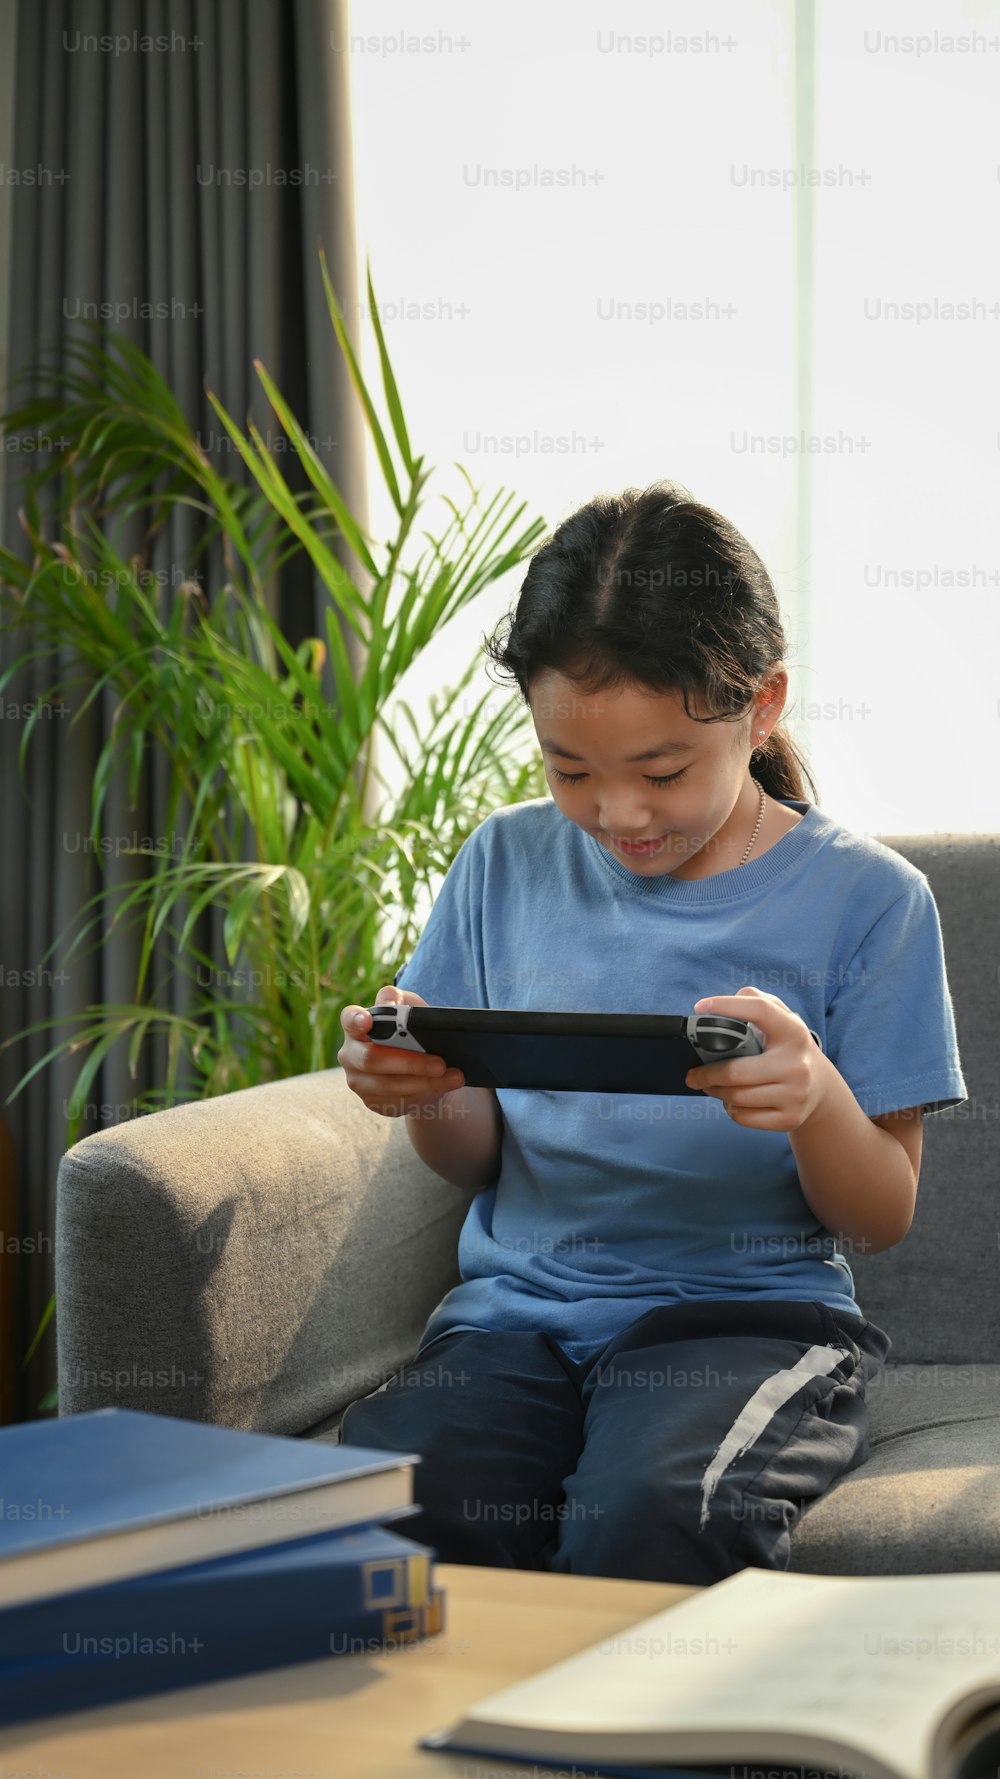 Retrato de una joven asiática jugando juegos y sentada en el sofá de la sala de estar.